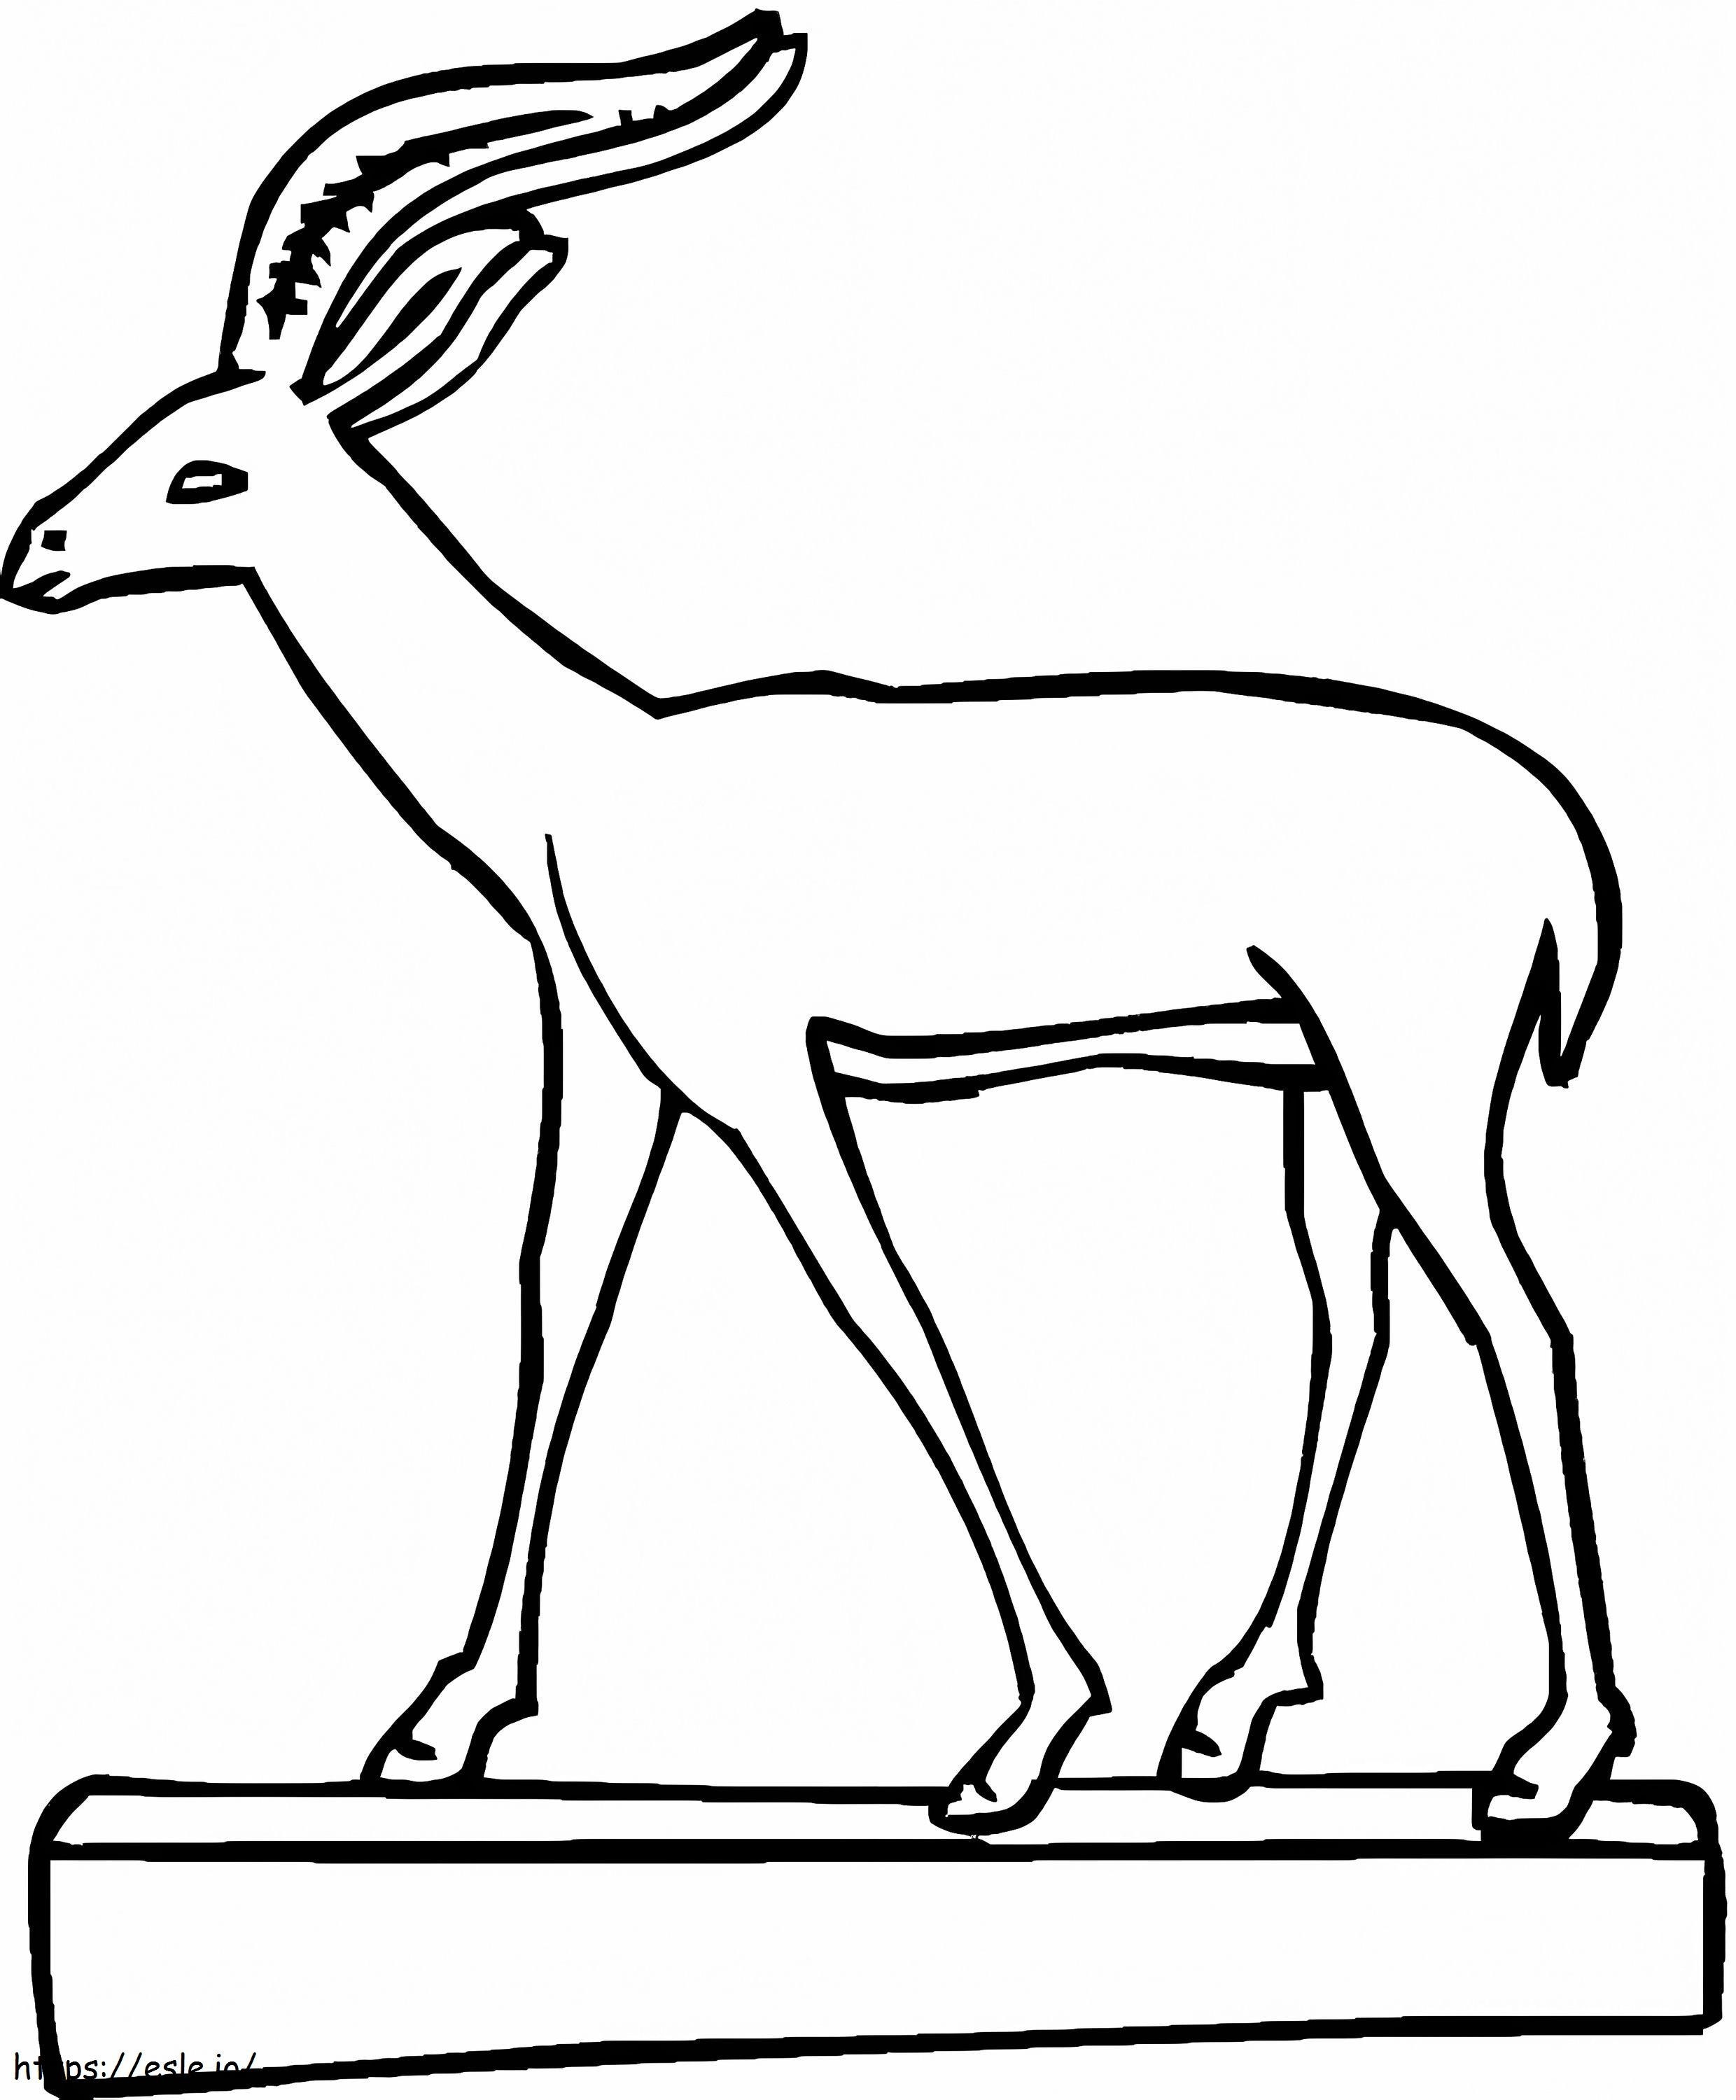 Coloriage Une gazelle normale à imprimer dessin